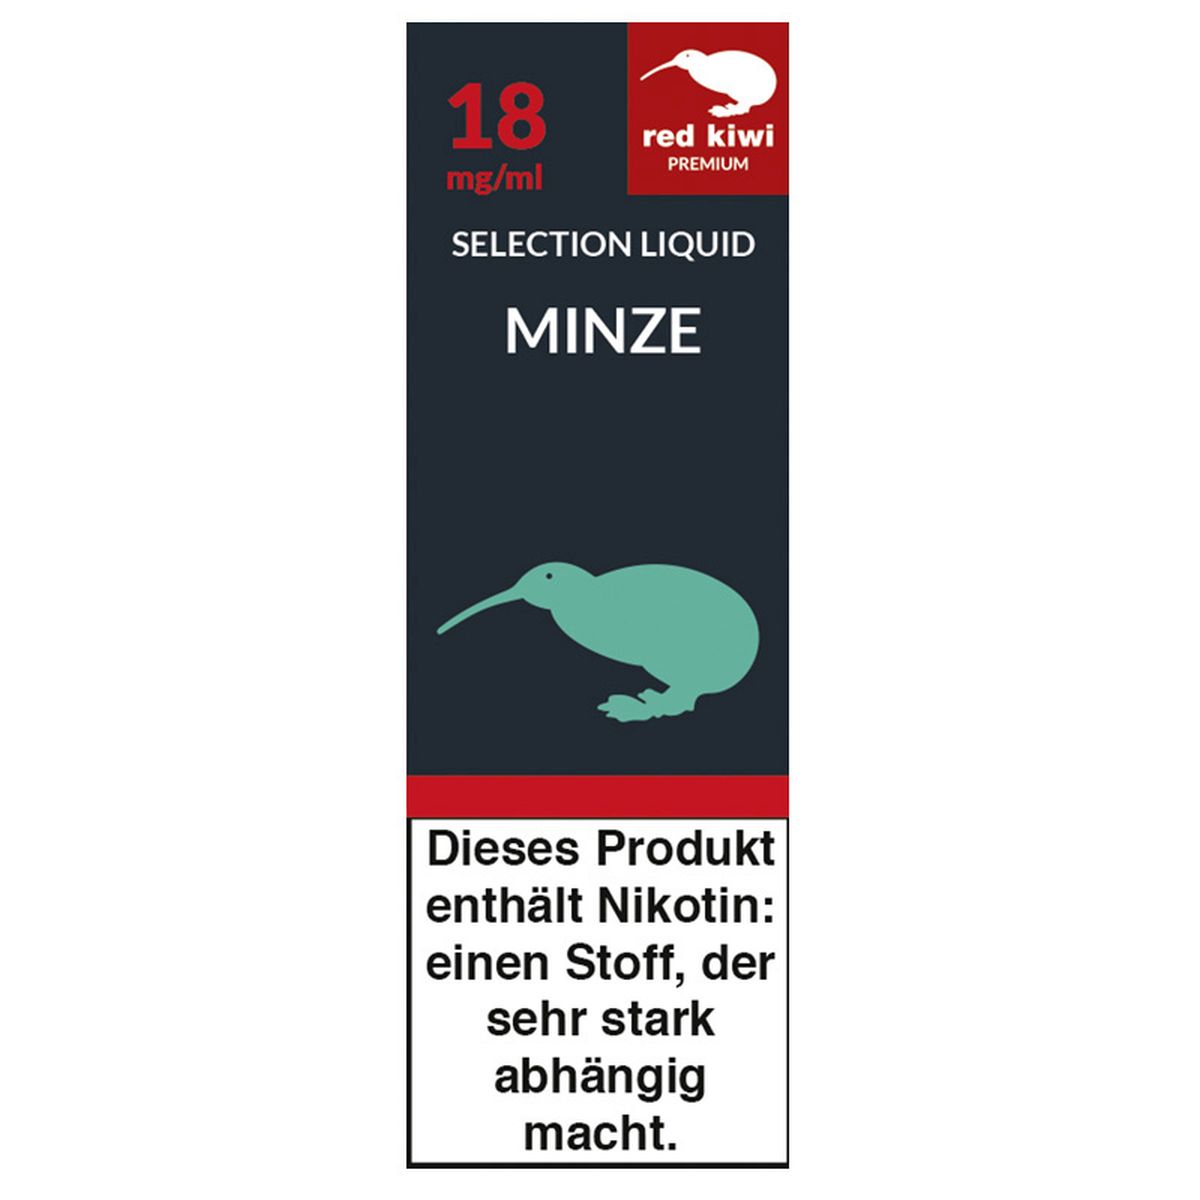 Red Kiwi Red Kiwi eLiquid Selection Minze 18mg Nikotin/ml bei www.Tabakring.de kaufen